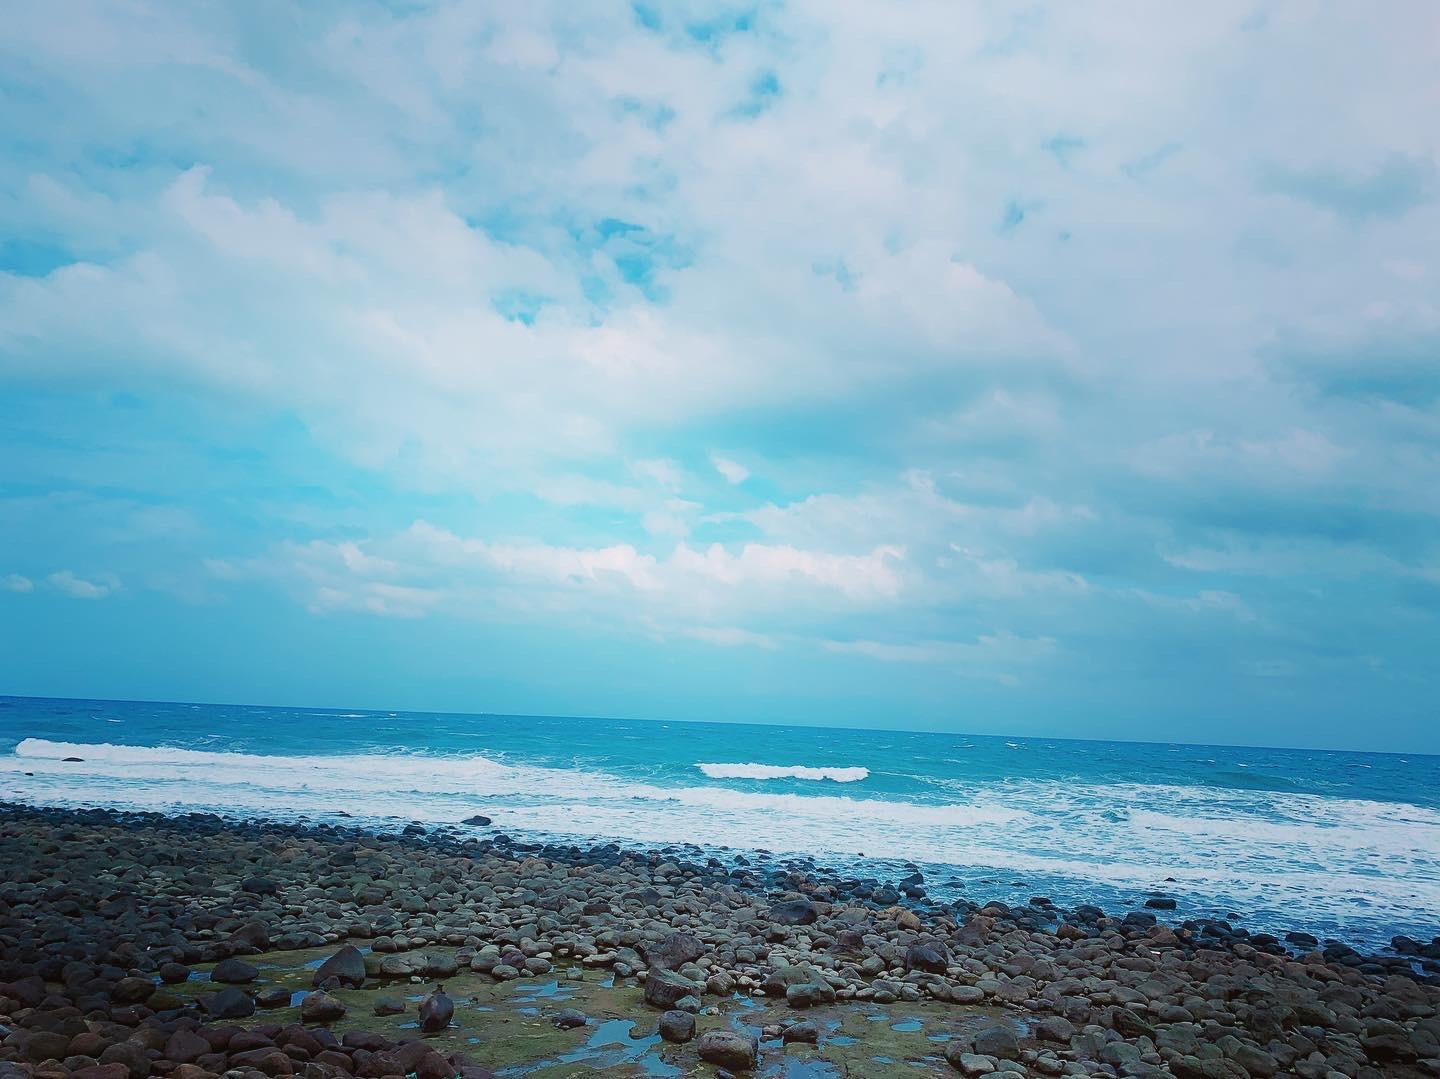 附上一張從洋荳子拍出去的海邊照，一整個讓人很放鬆呀～！